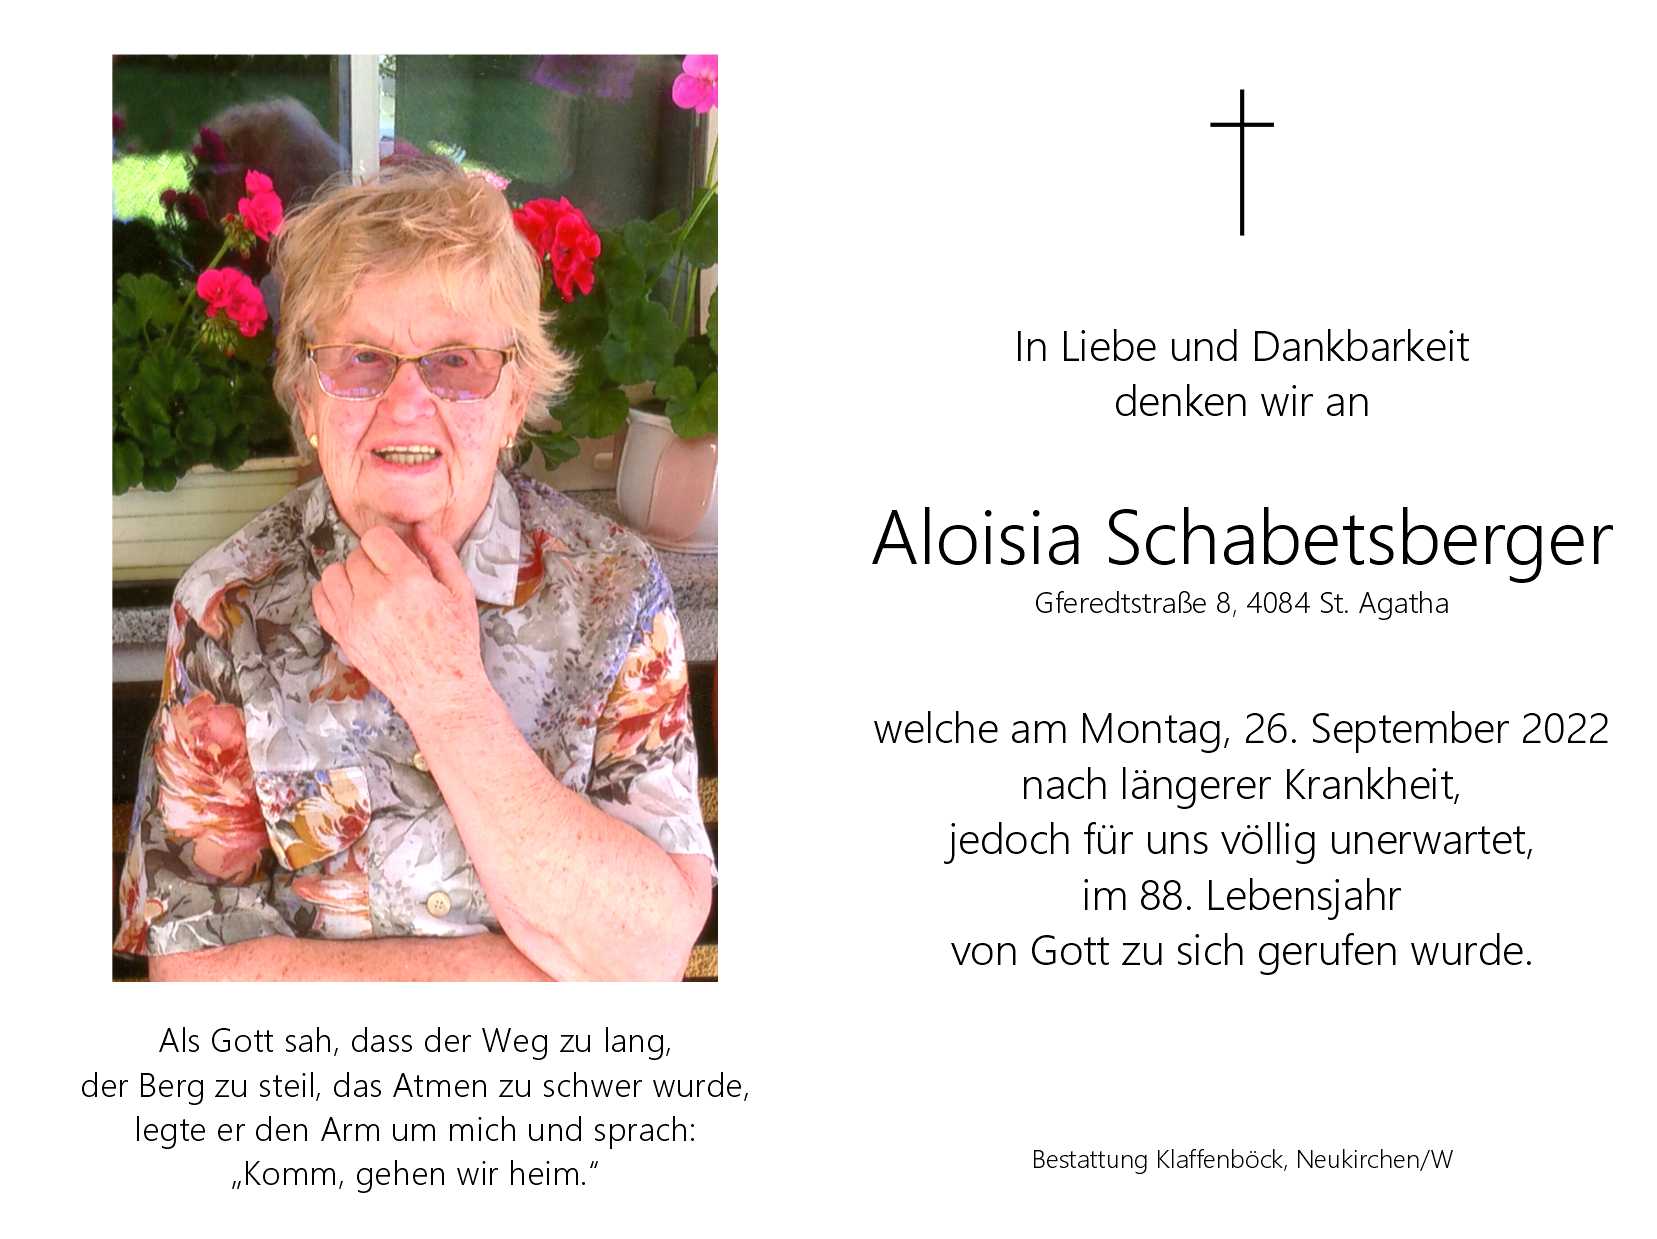 Aloisia  Schabetsberger